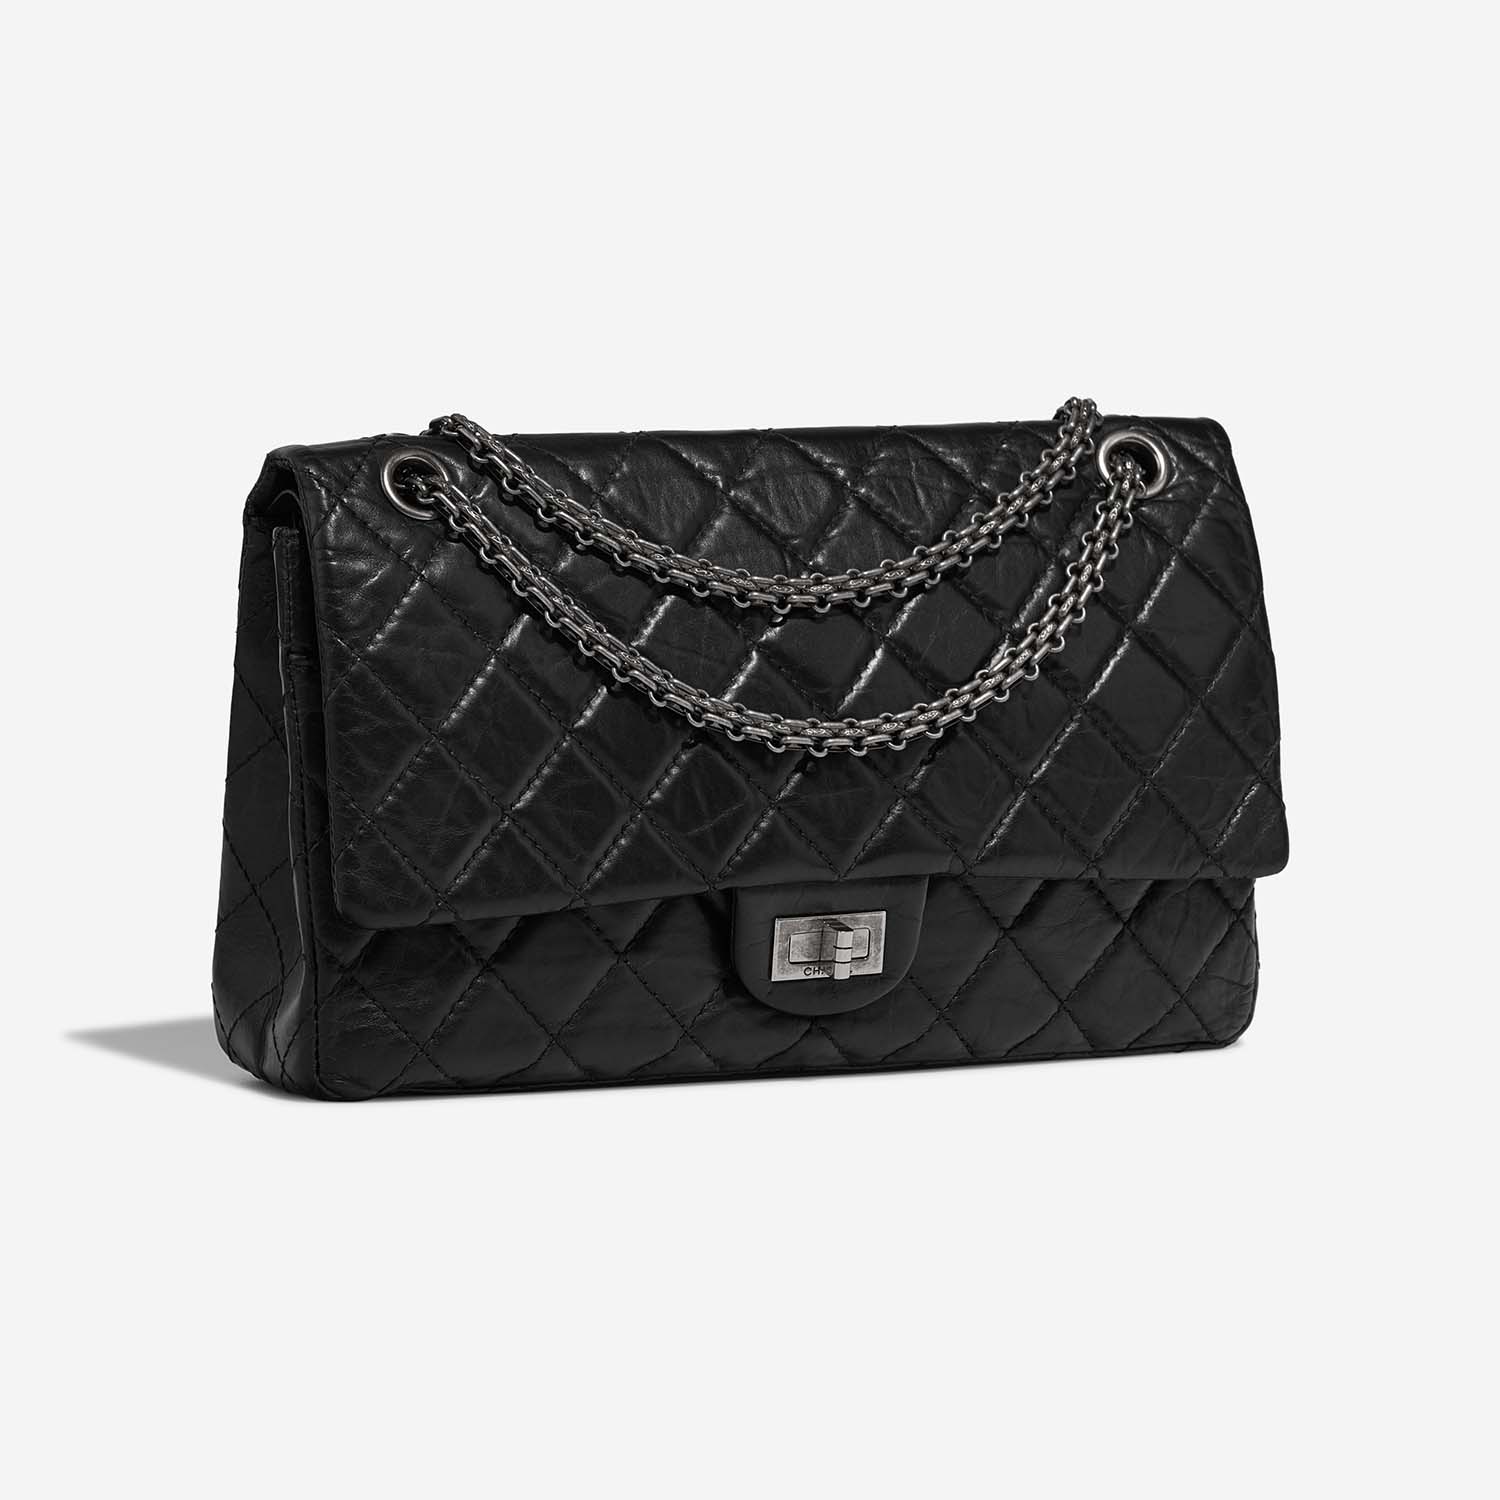 Chanel 255 226 Schwarz Side Front | Verkaufen Sie Ihre Designer-Tasche auf Saclab.com